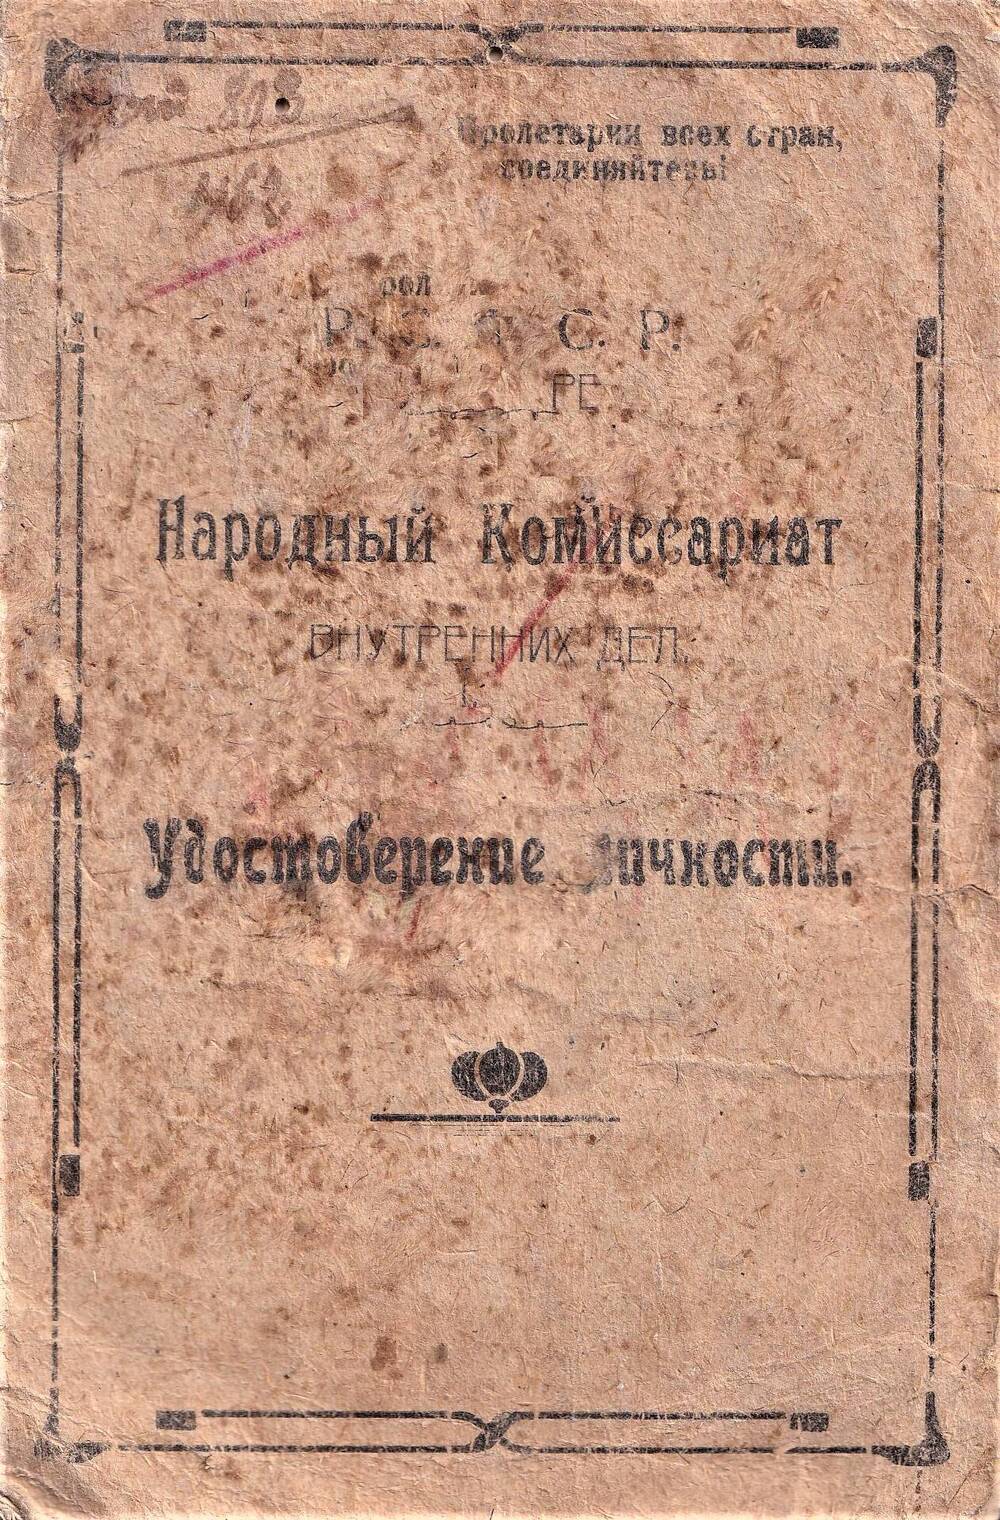 Удостоверение личности №5056 Александровой Прасковьи Петровны, выдано 17 декабря 1924 года.